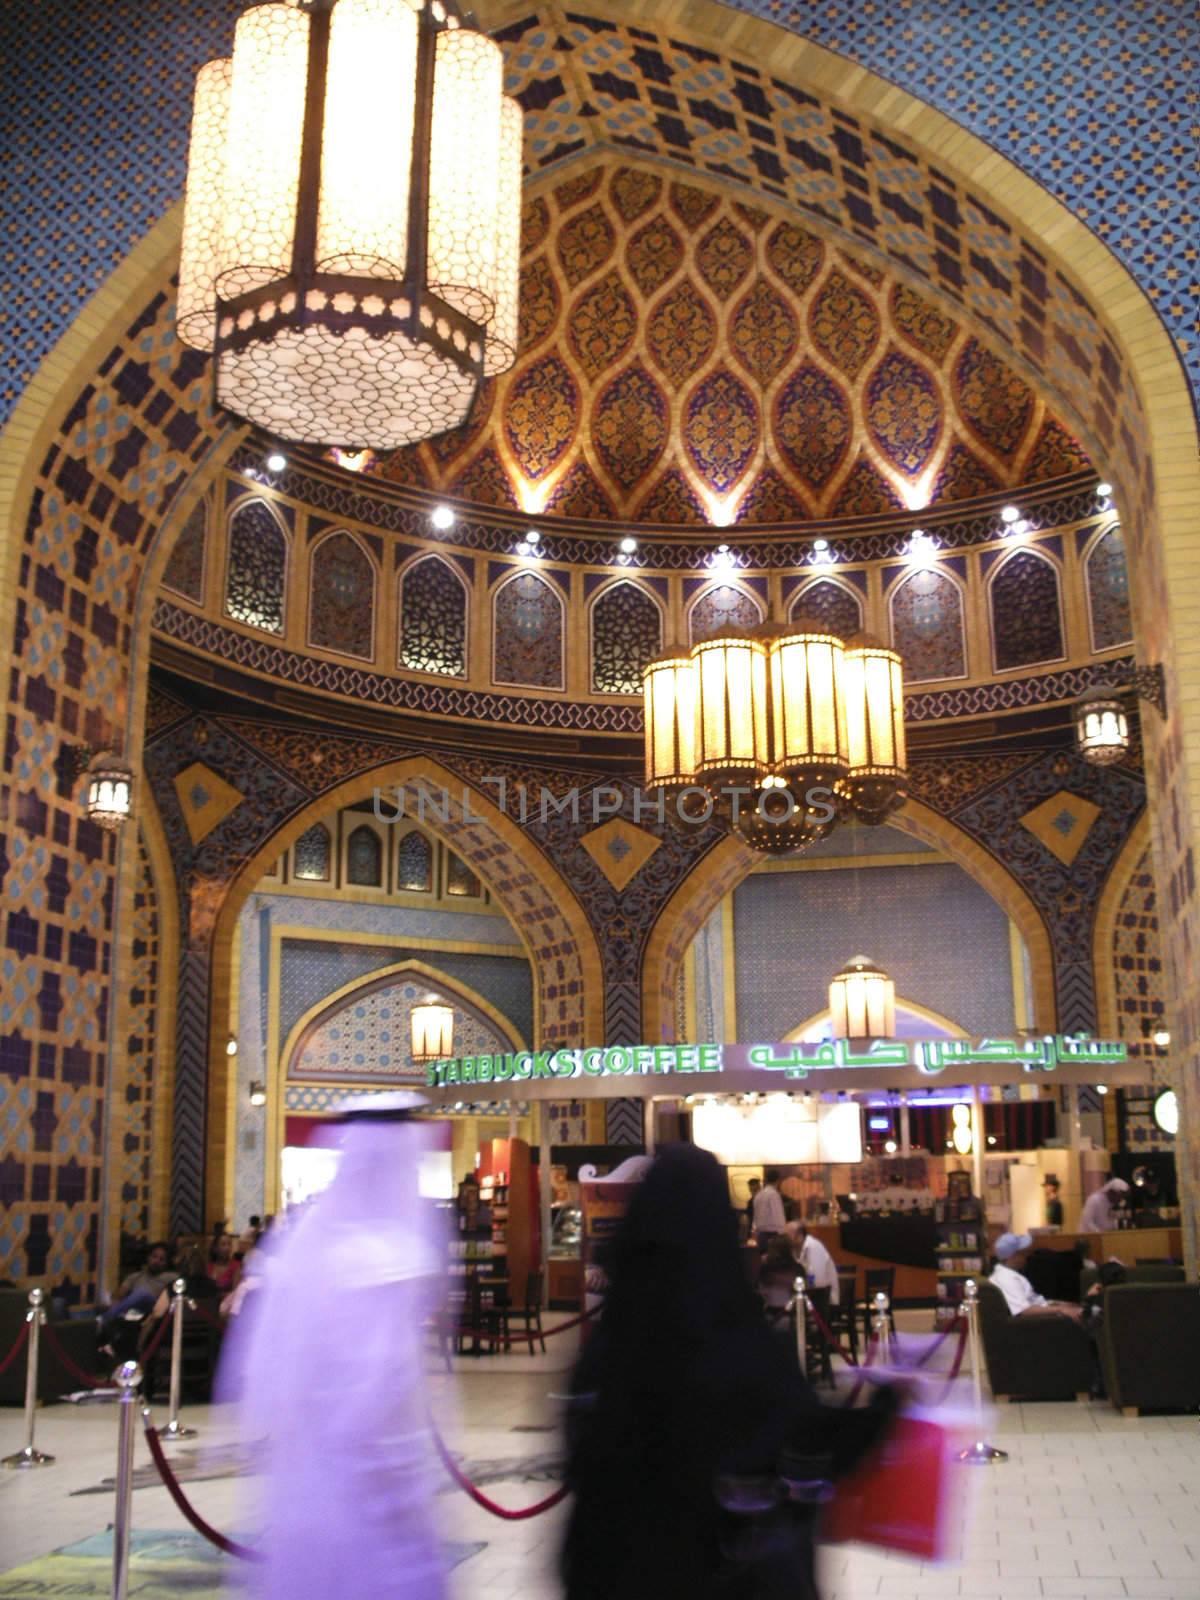 Ibn Battuta Shopping Mall, Dubai by cvail73